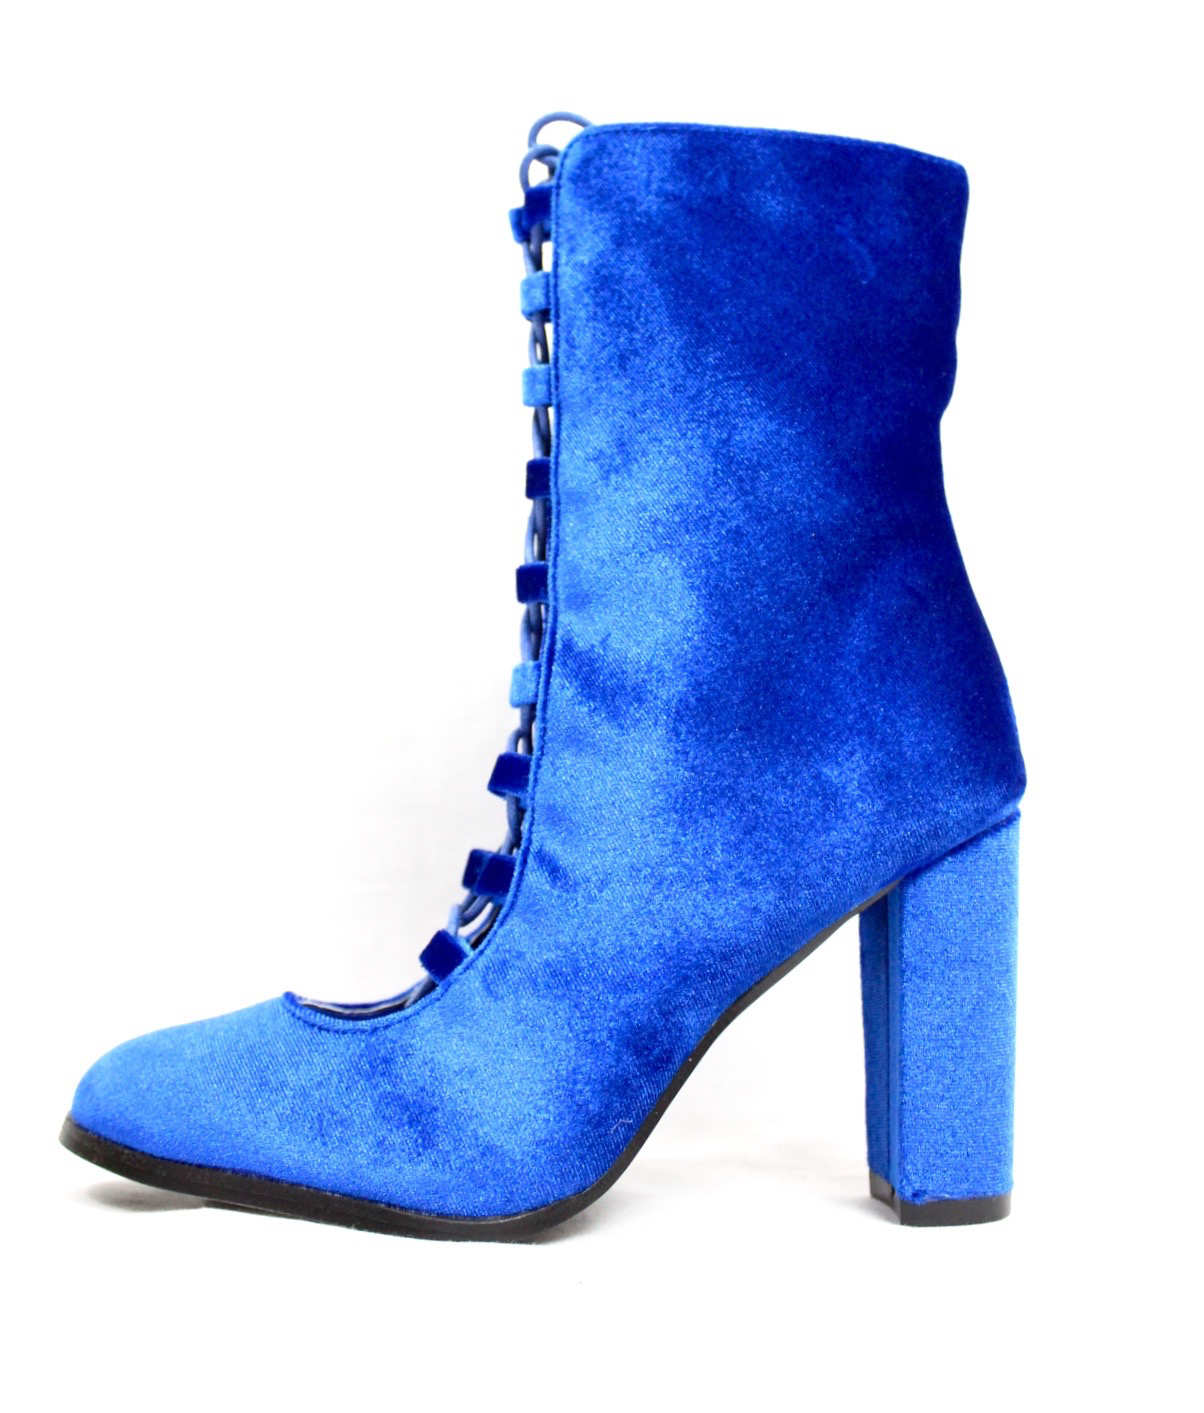 blue bootie heels